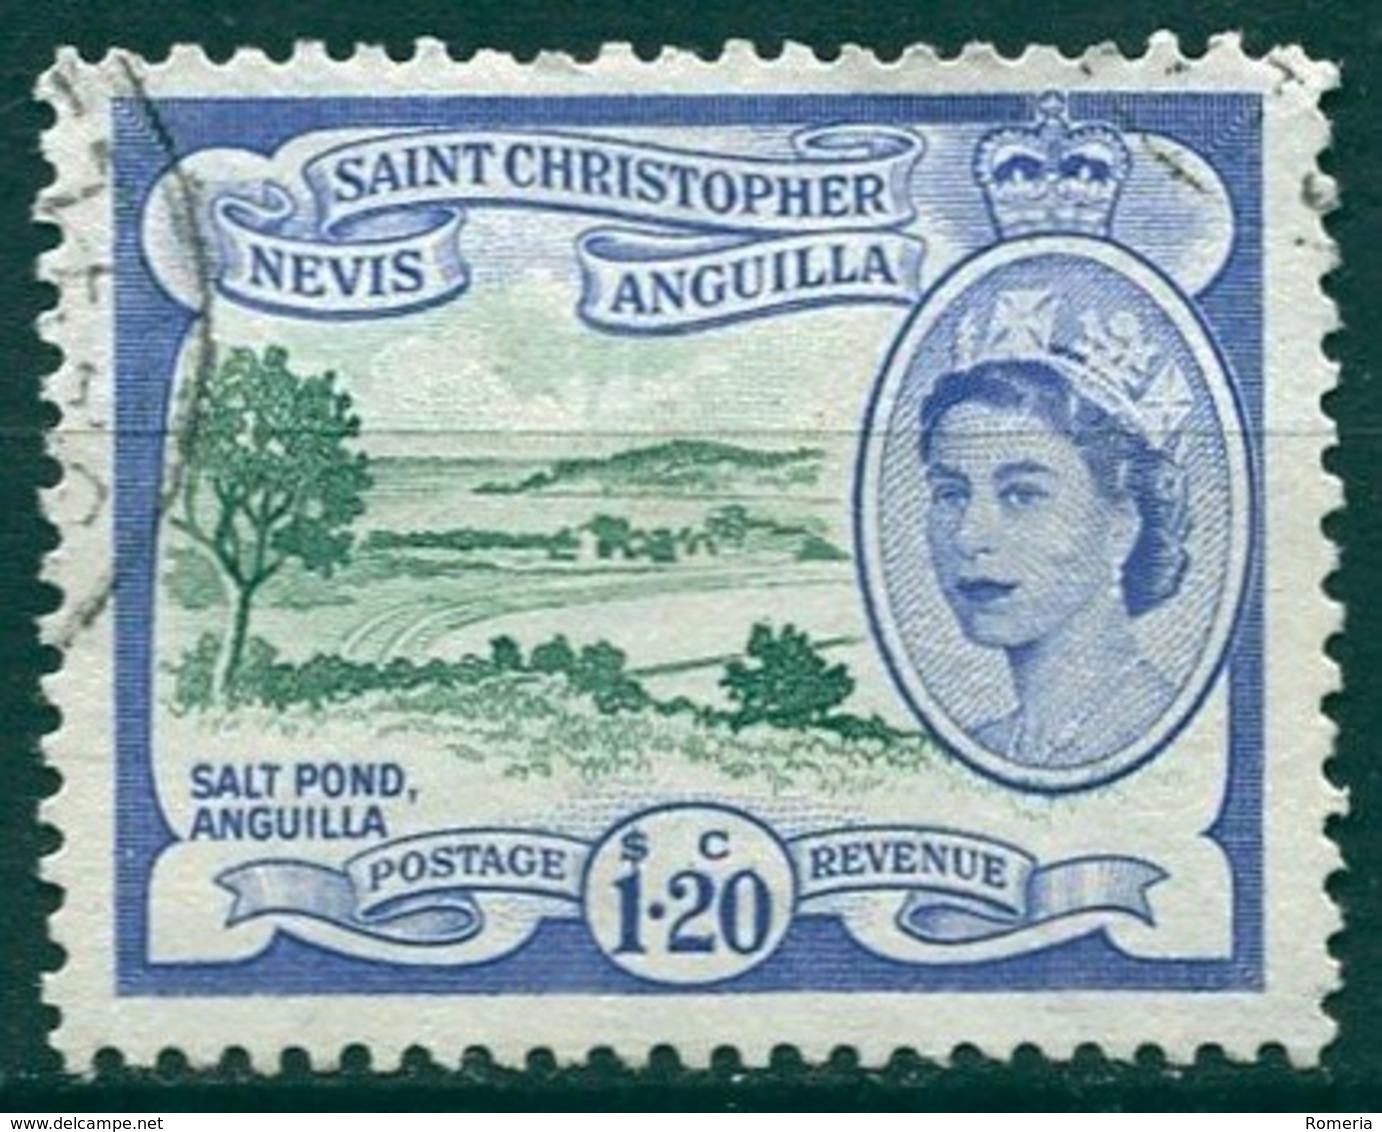 Saint Christopher Nevis Anguilla - 1954/1957 - Yt 146 - Série Courante - Oblitéré - St.Christopher-Nevis & Anguilla (...-1980)